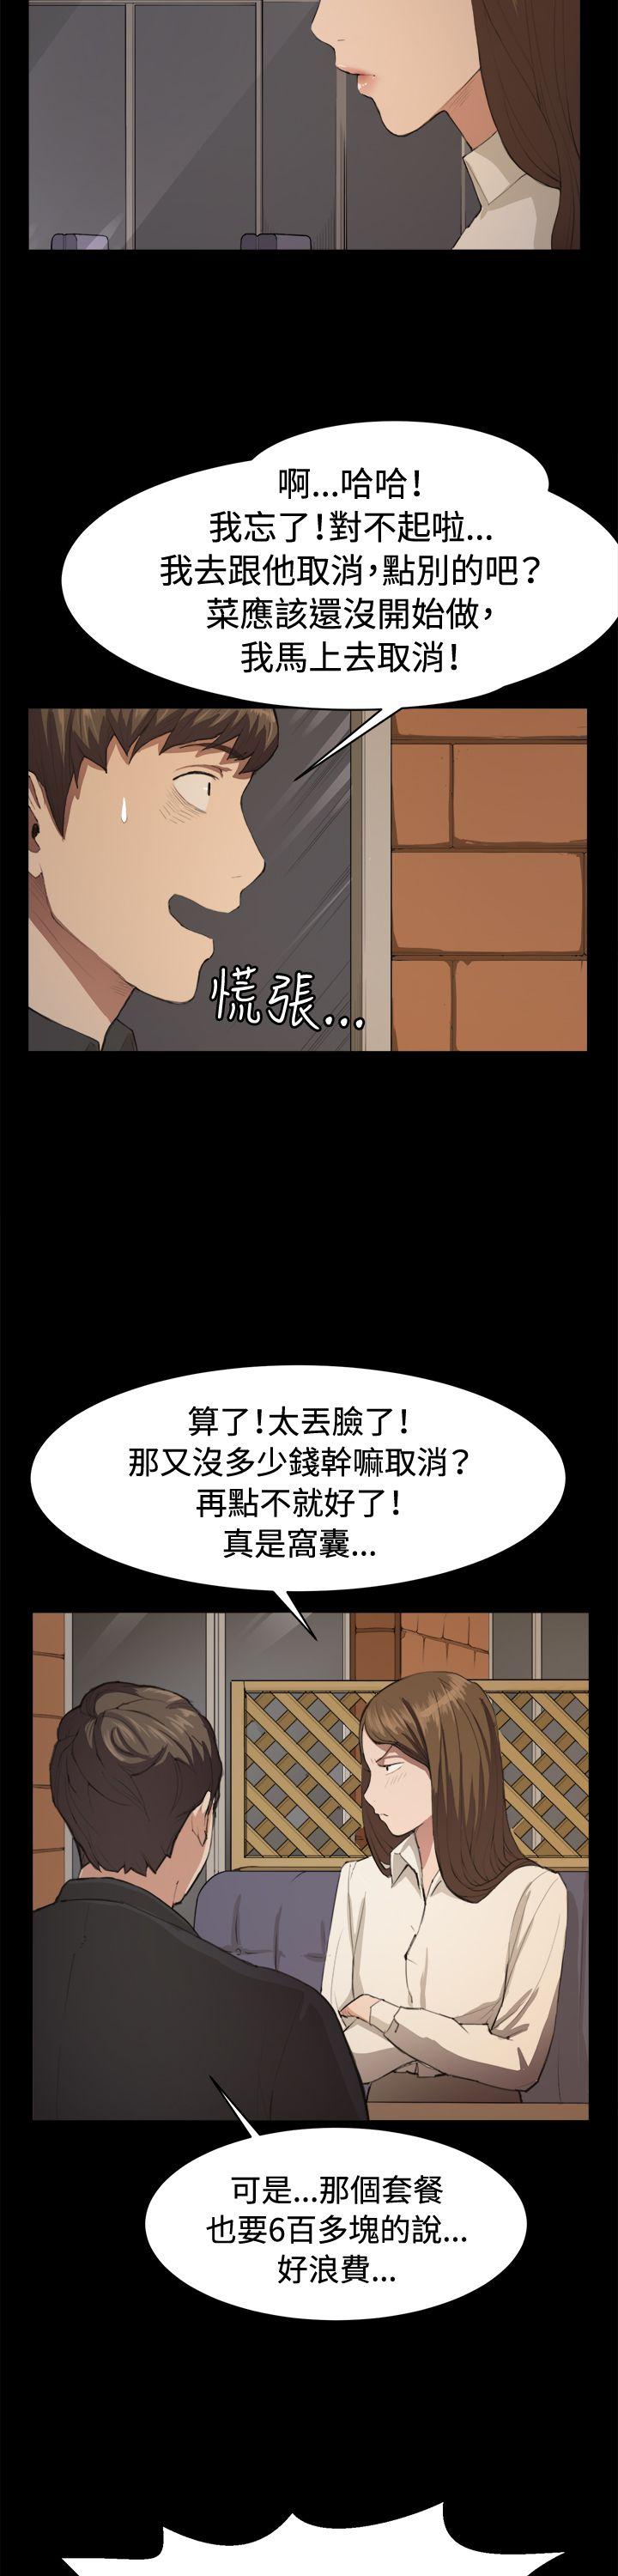 韩国污漫画 深夜便利店 第10话 3